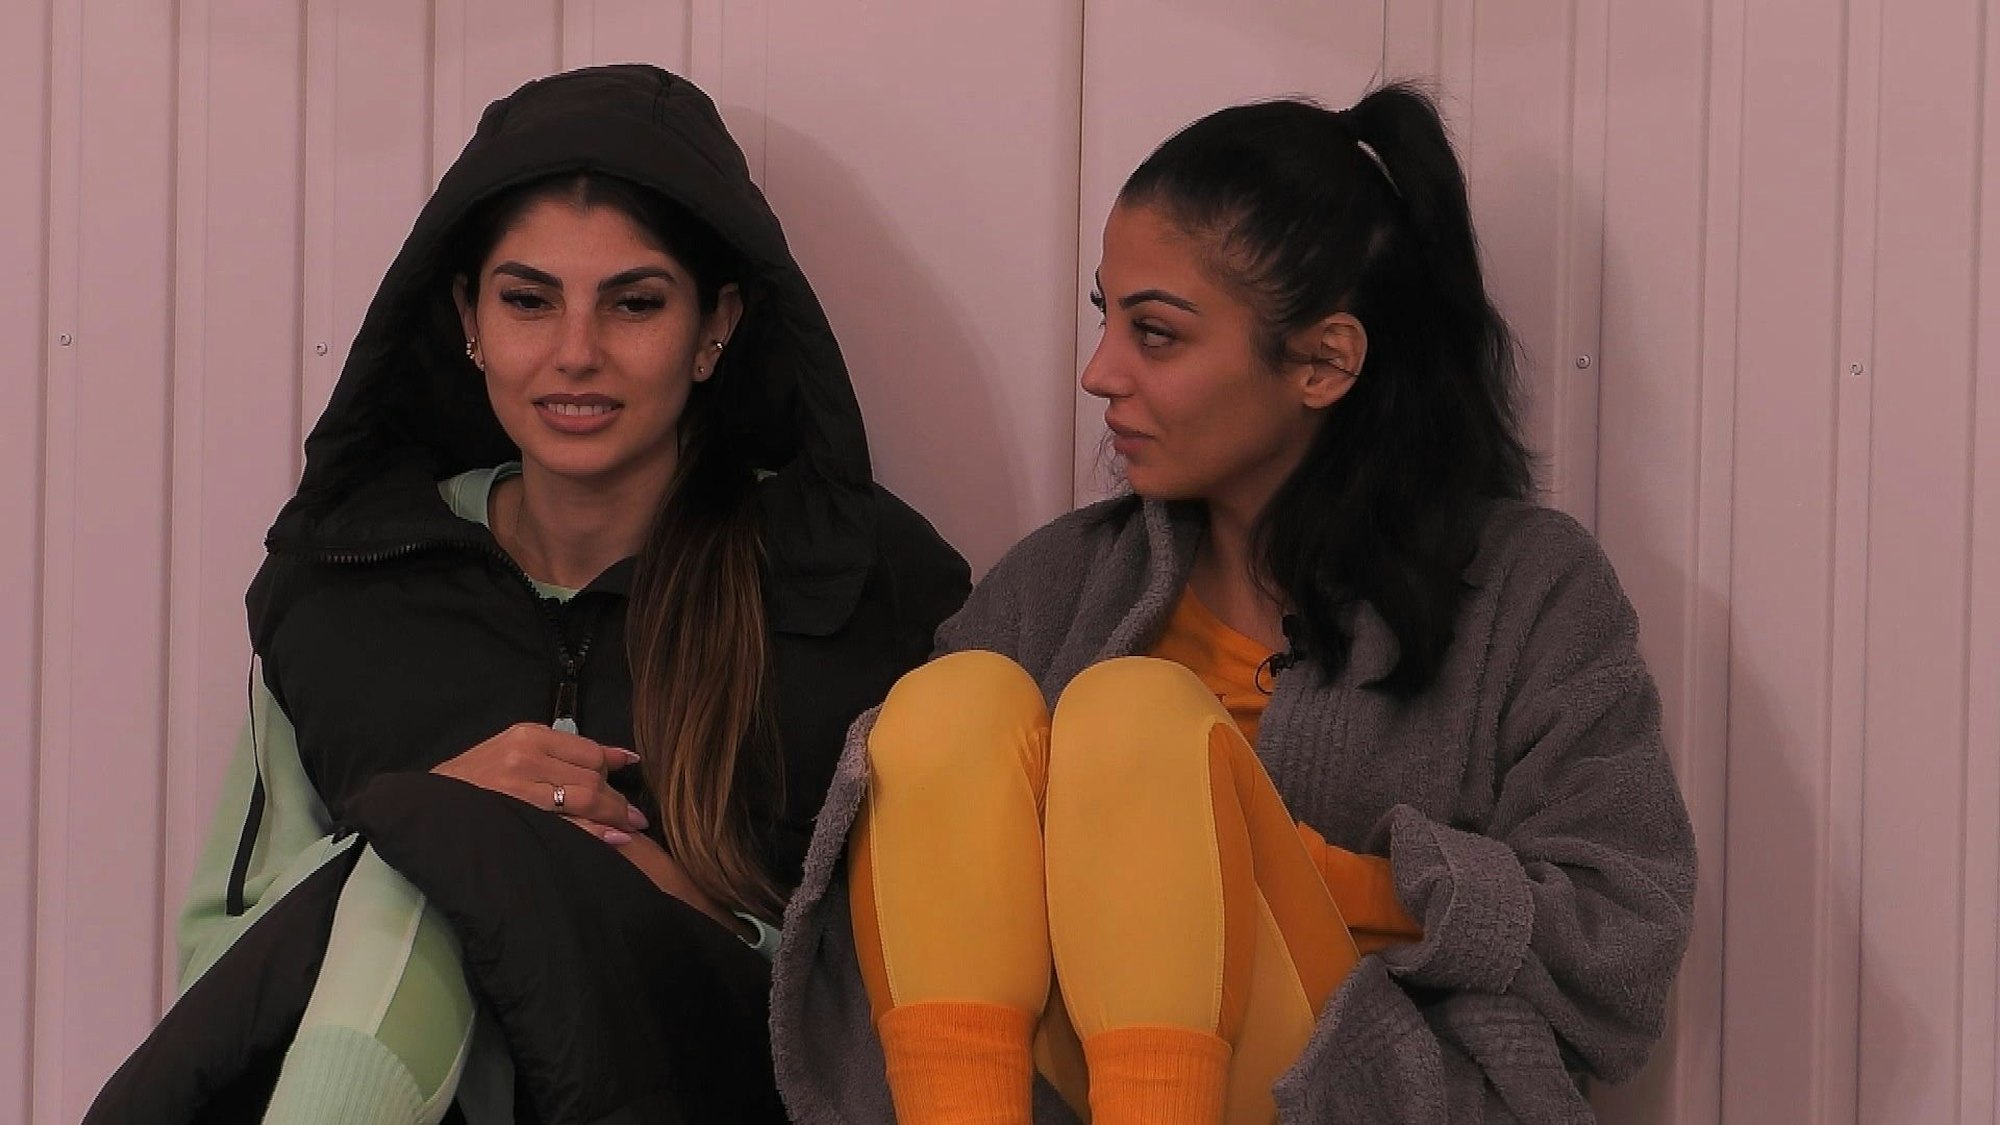 Das Foto stammt aus der Sat.1-Show „Promi Big Brother“ und zeigt die beiden Kandidatinnen Yeliz Koc (l.) und Dilara Kruse (r.) im Gespräch.